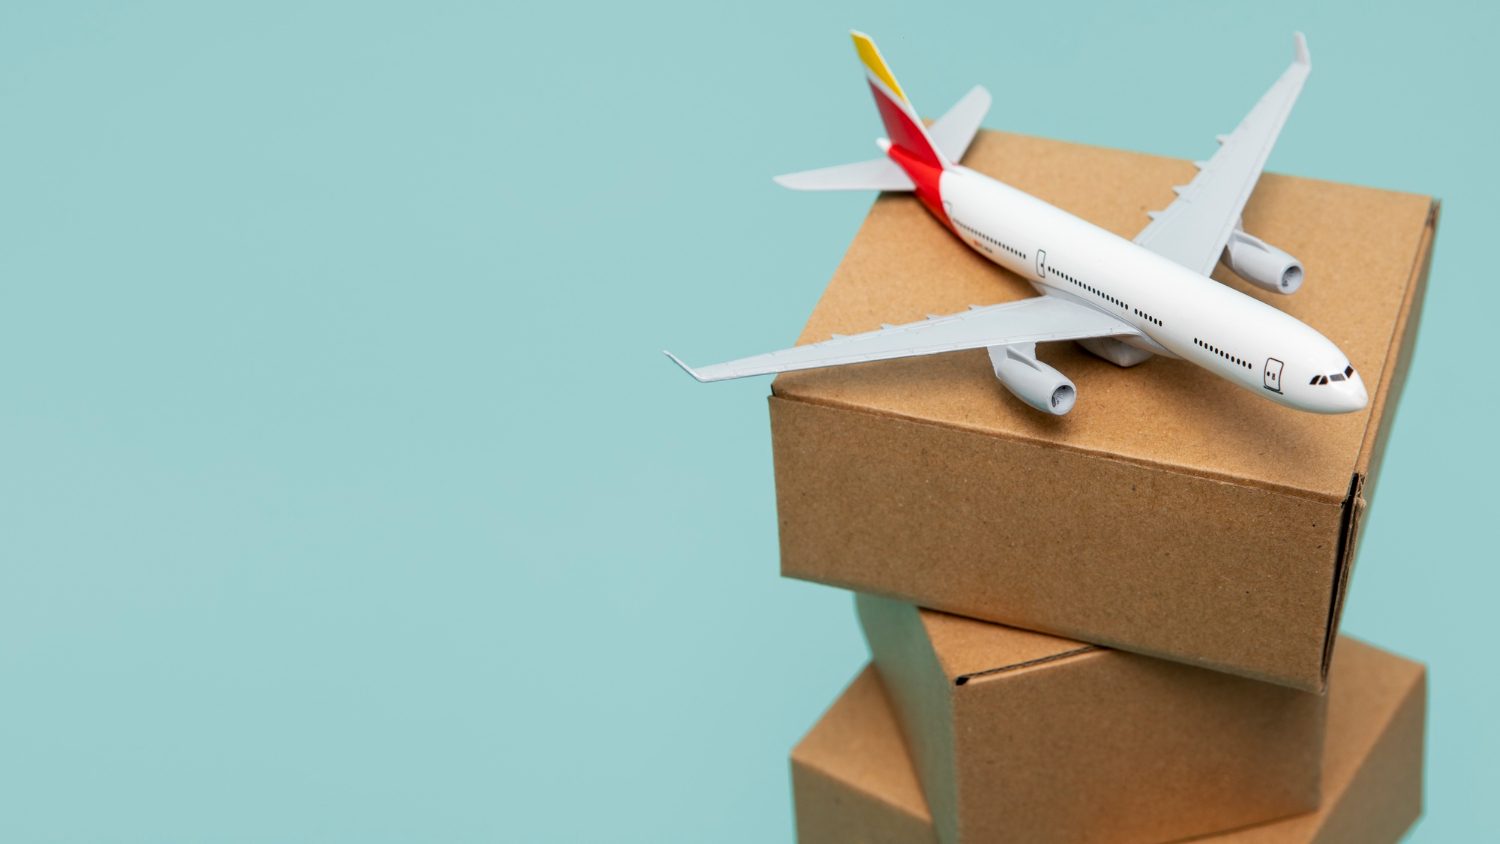 plane-cardboard-boxes-high-angle